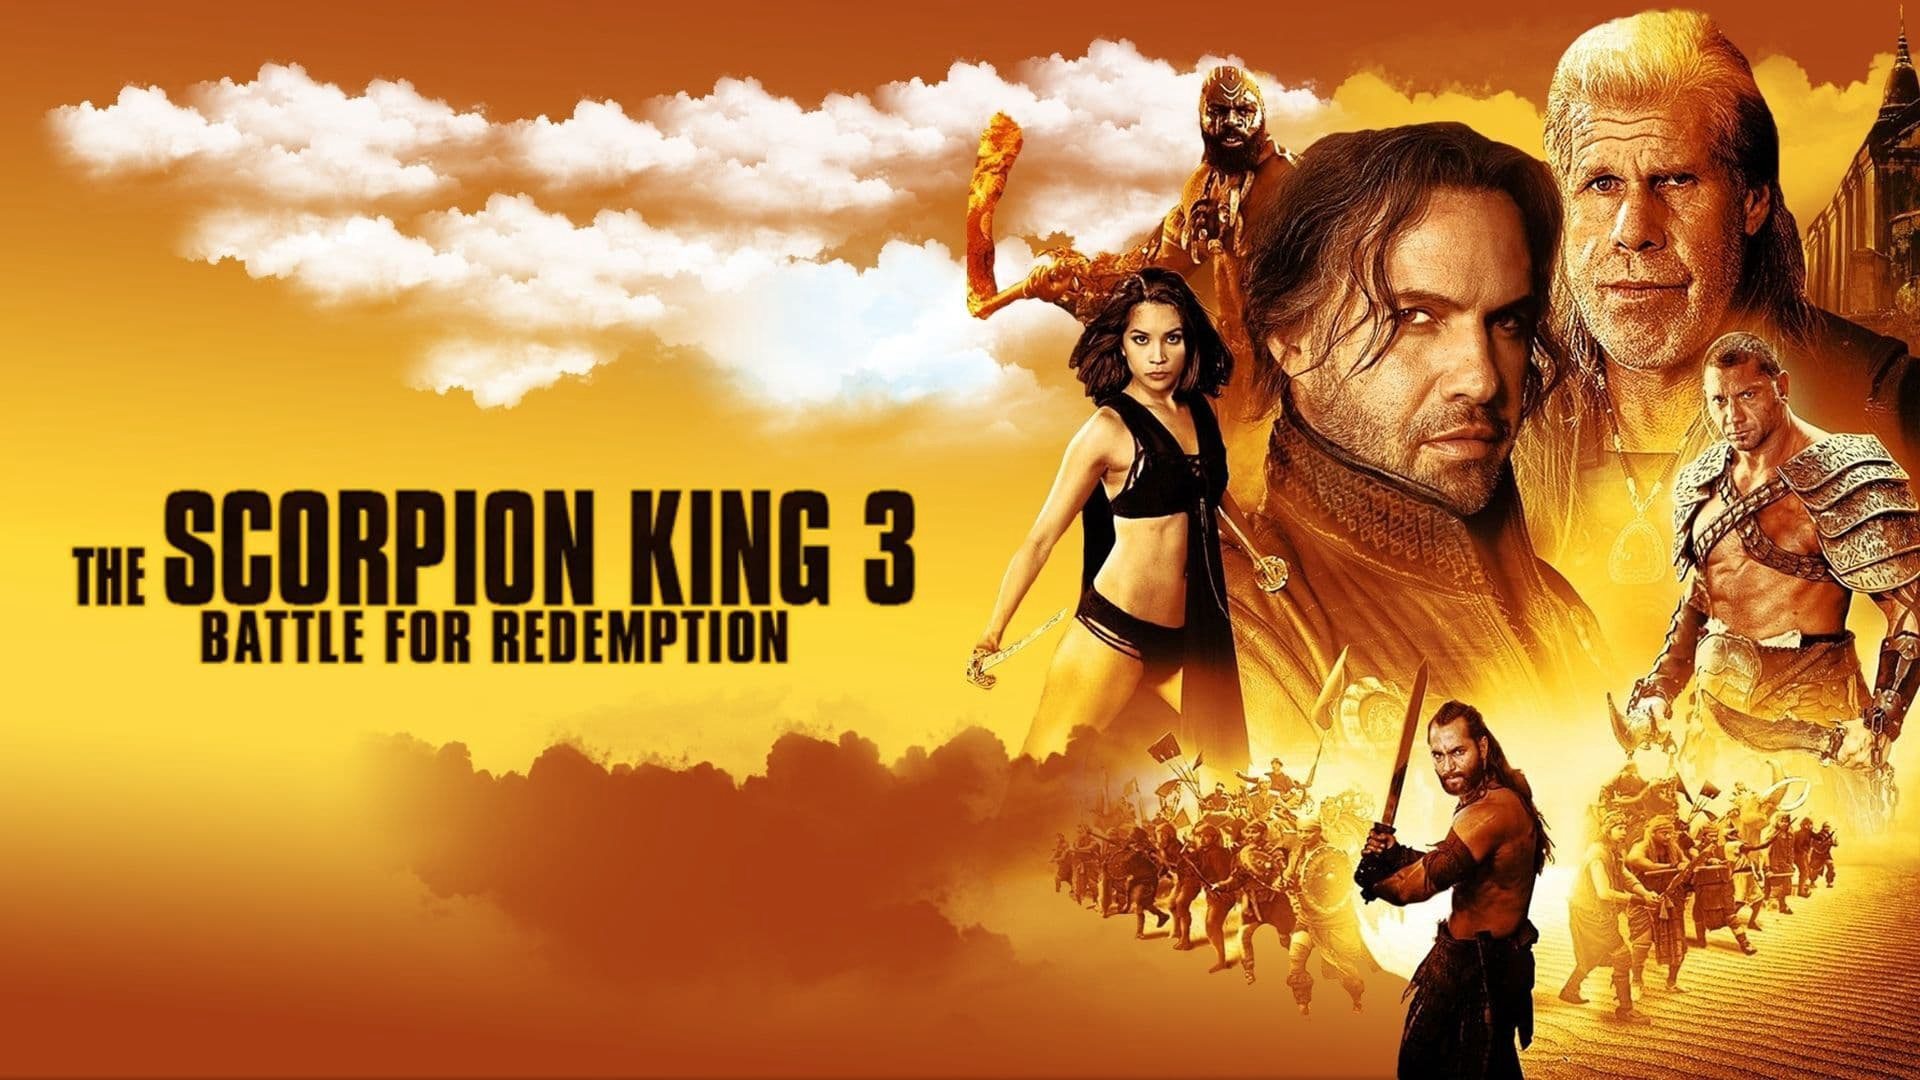 Vua bọ cạp 3: Cuộc chiến chuộc tội The Scorpion King 3: Battle for Redemption